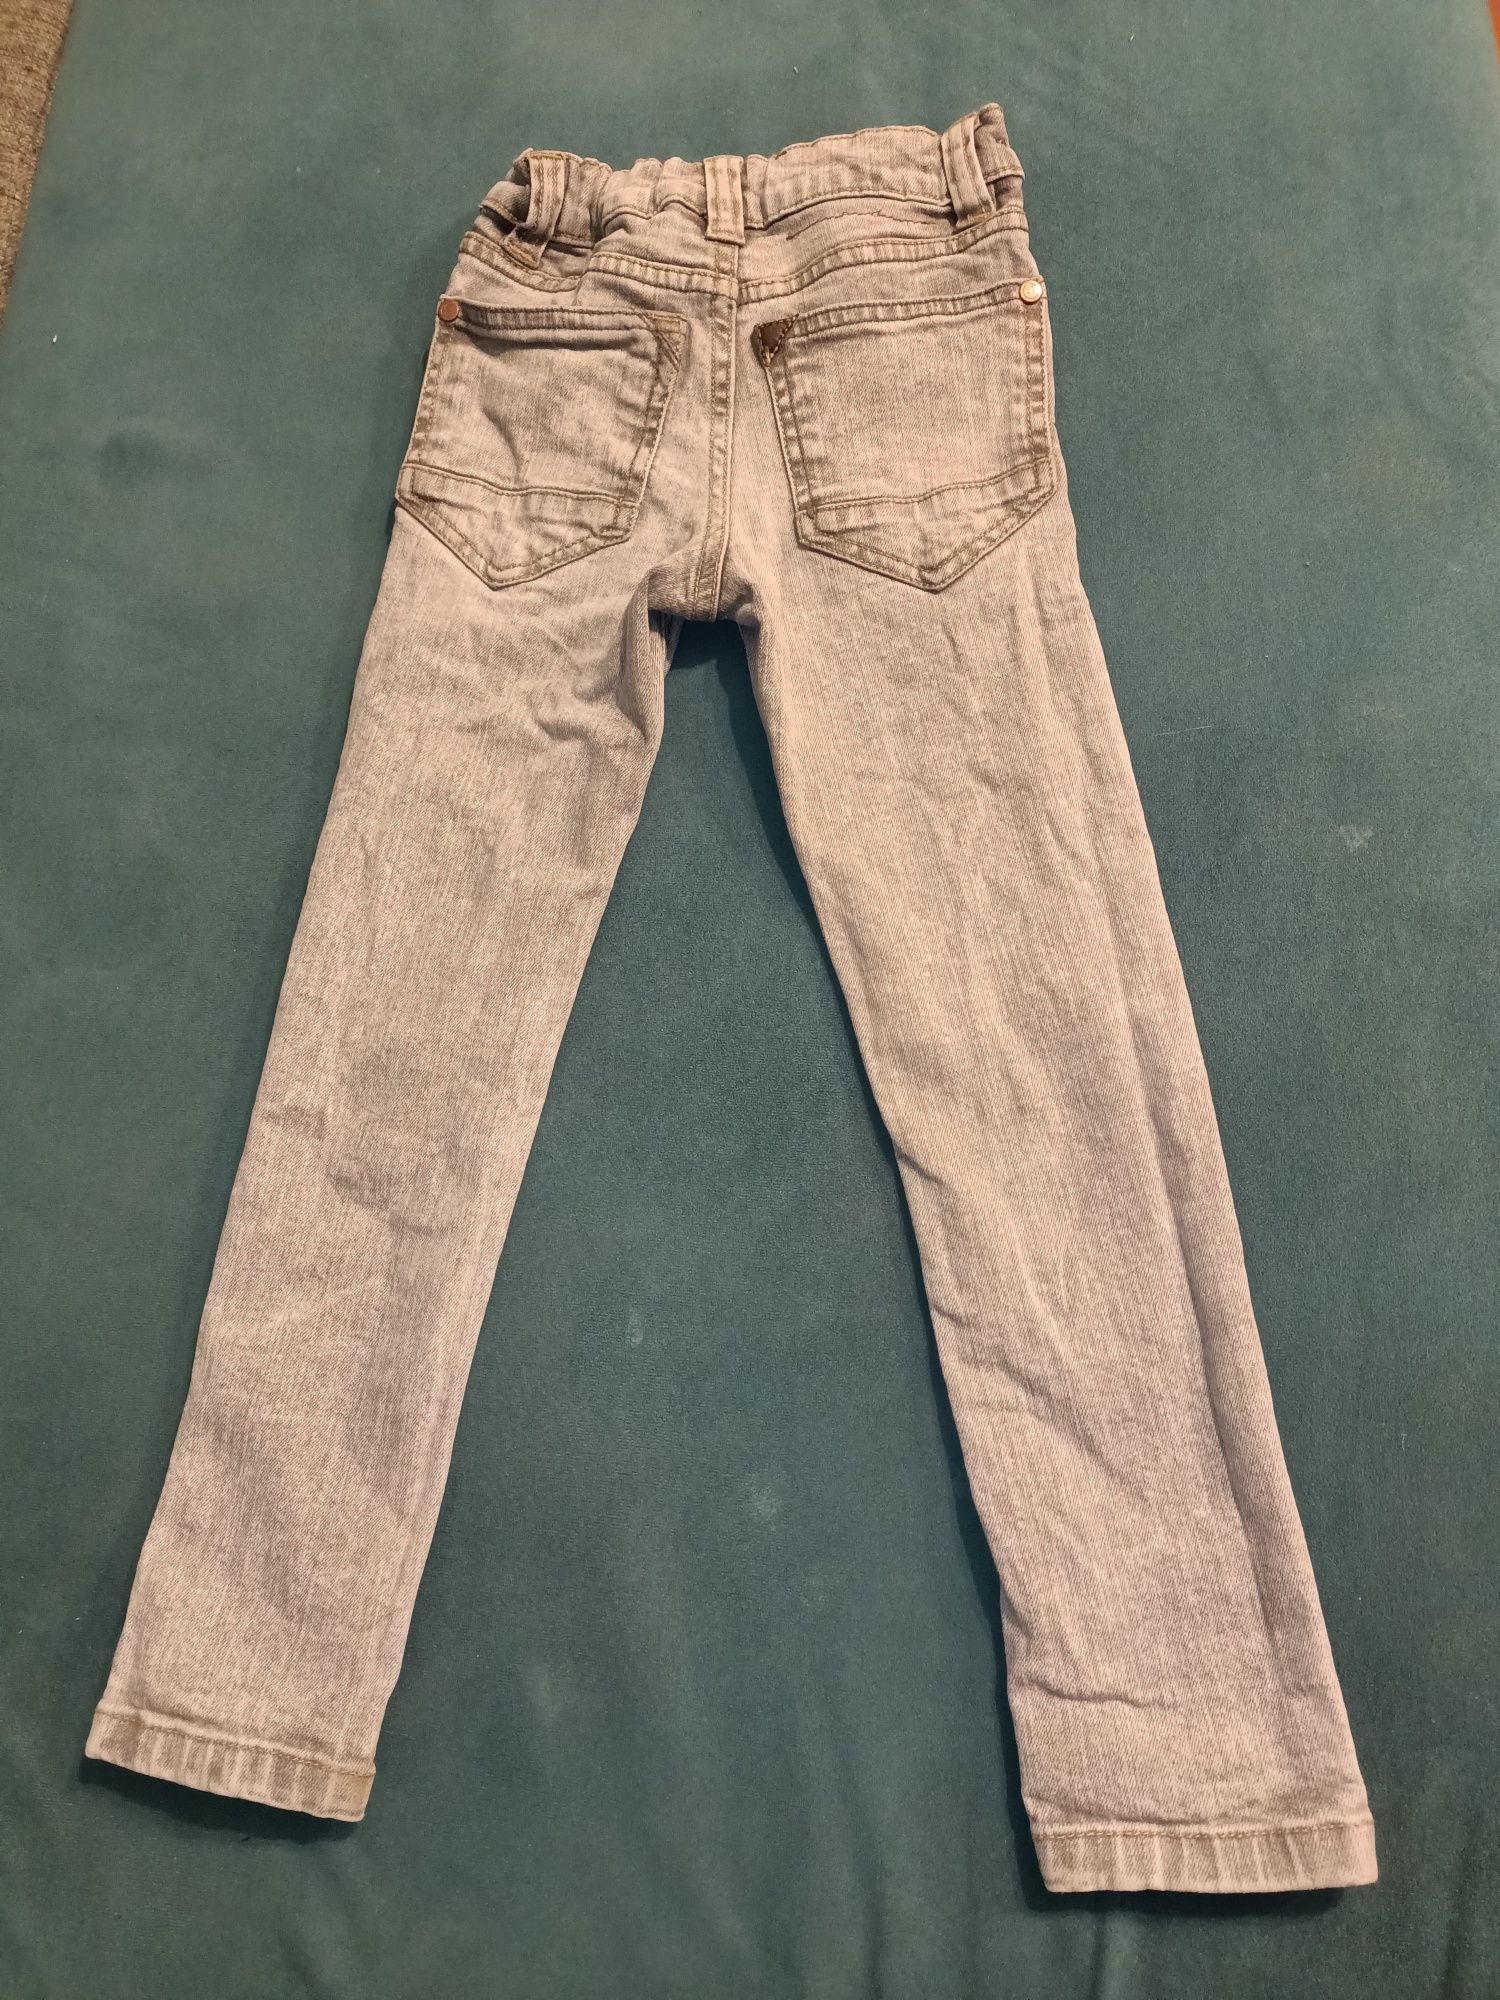 Spodnie dżinsy jeansy 98/104 dla chłopca szare Next skinny rurki